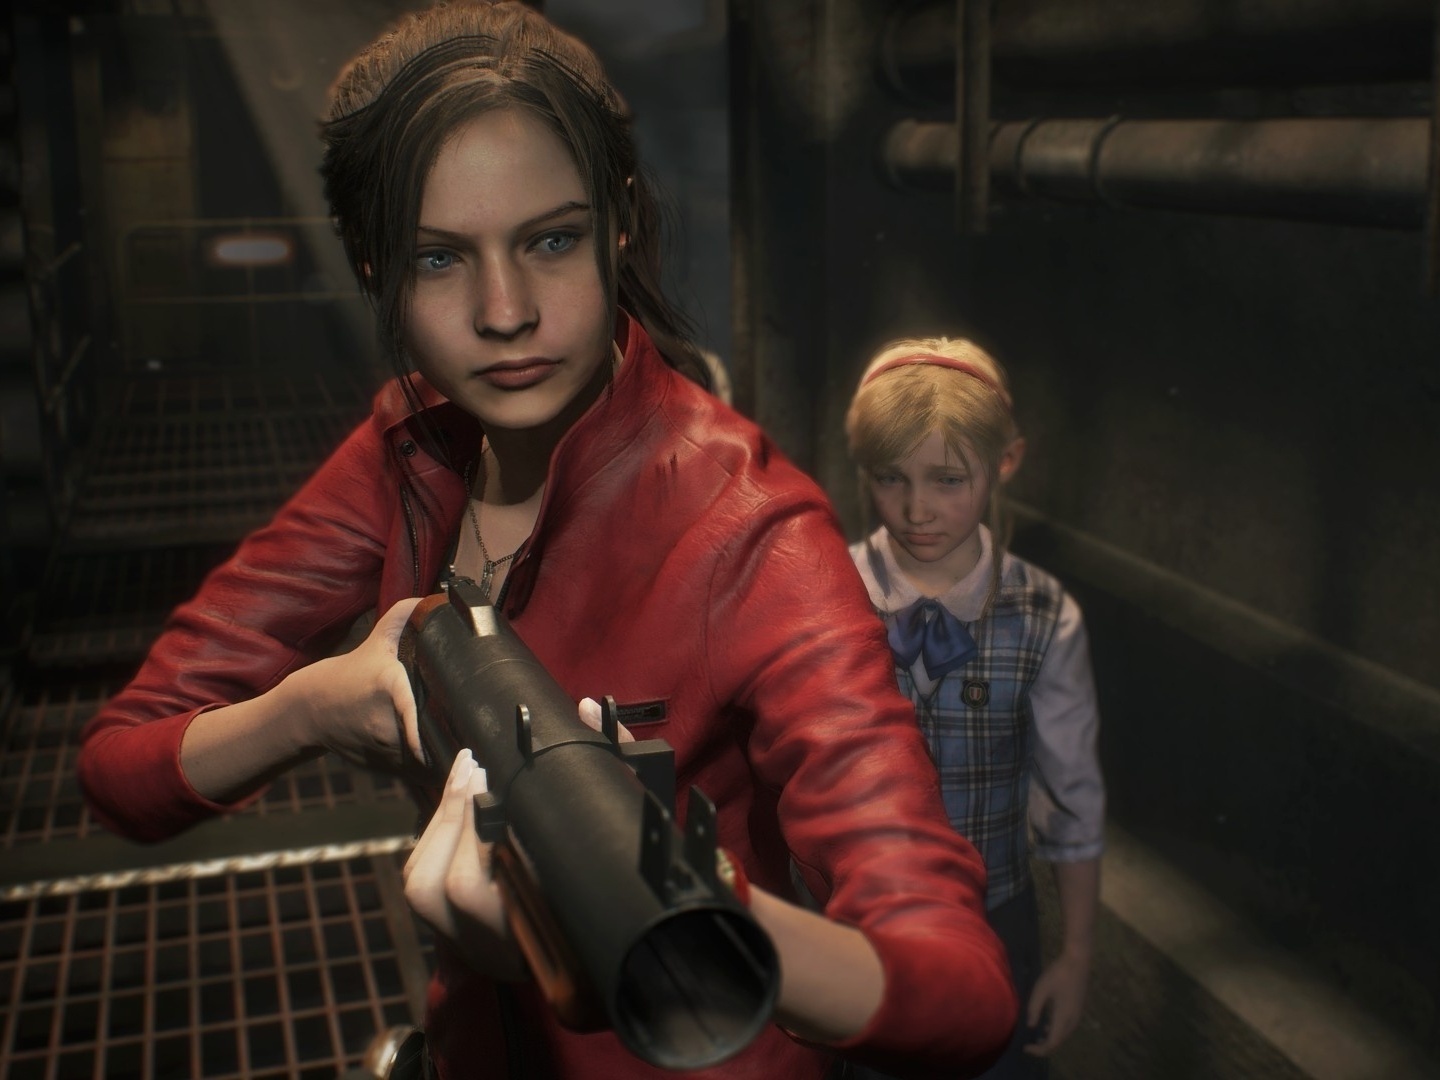 Game Resident Evil 2 BR - Xbox One em Promoção na Americanas